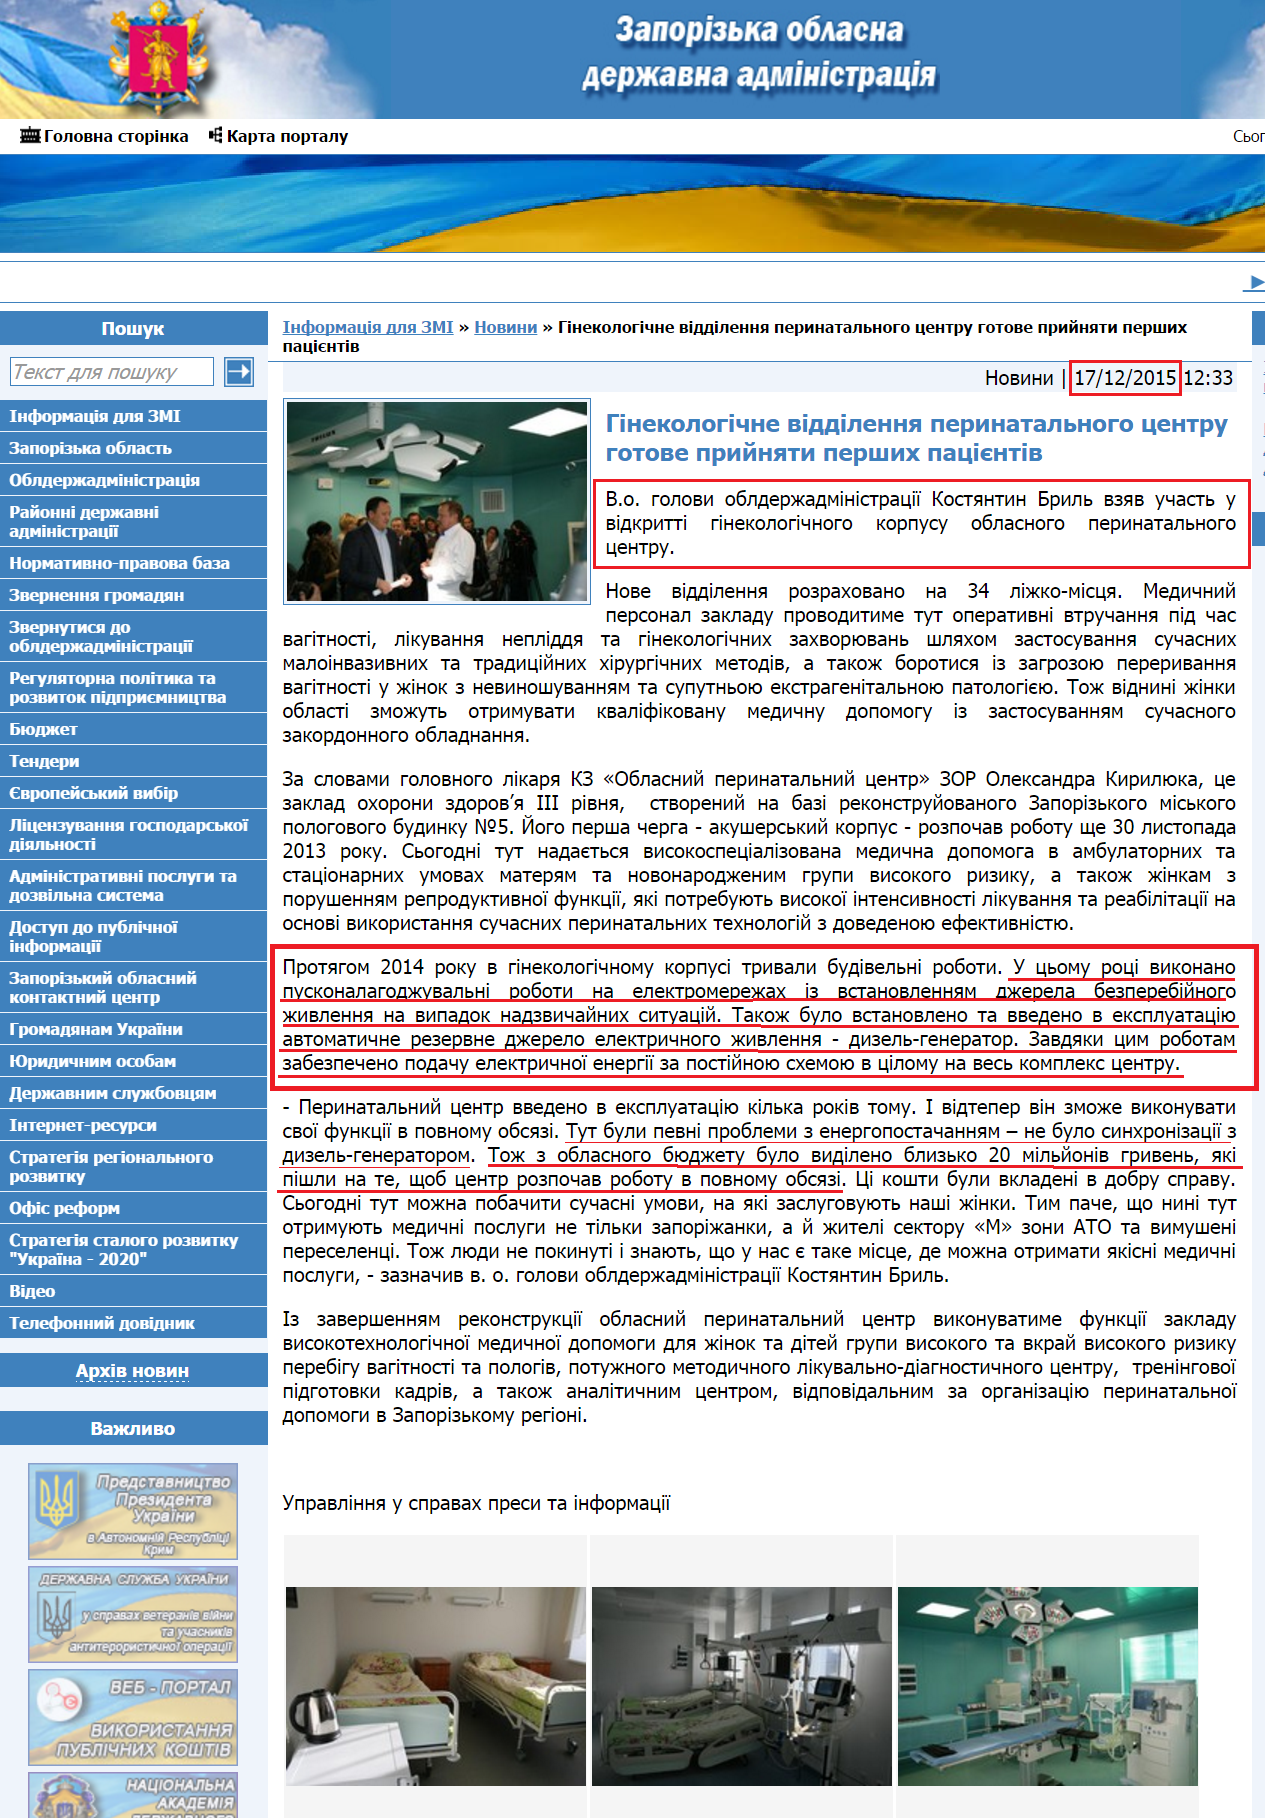 http://www.zoda.gov.ua/news/29717/ginekologichne-viddilennya-perinatalnogo-tsentru-gotove-priynyati-pershih-patsijentiv.html